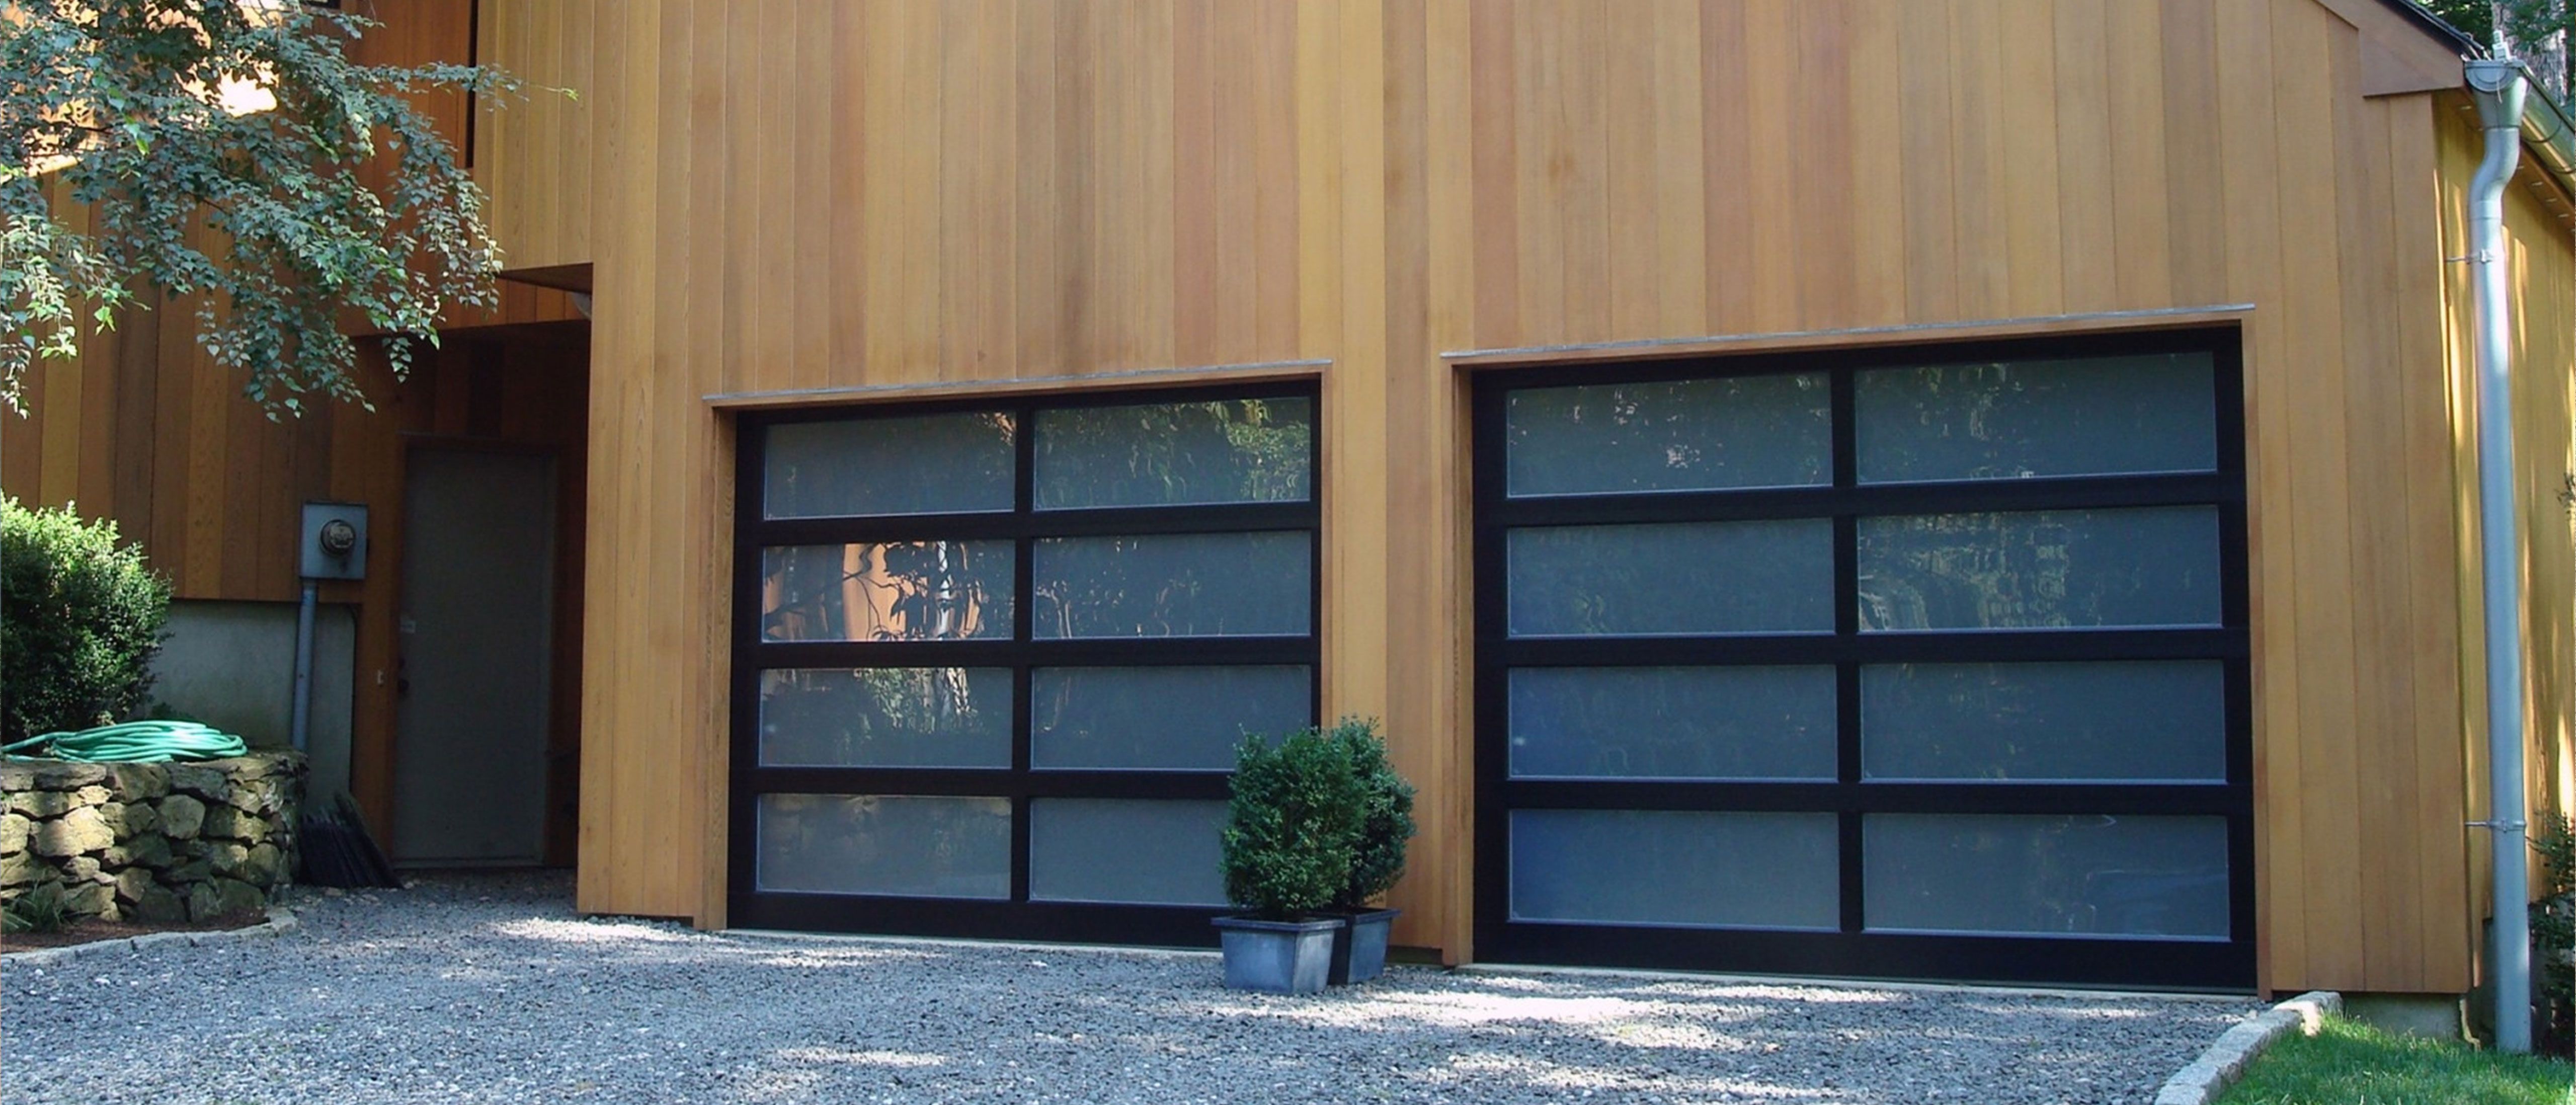 Porte Garage a Stradella Passive House Installazione Preventivo Costo Casa Villa Villetta residenziali  industriali aziendali Porte tipo serrande  